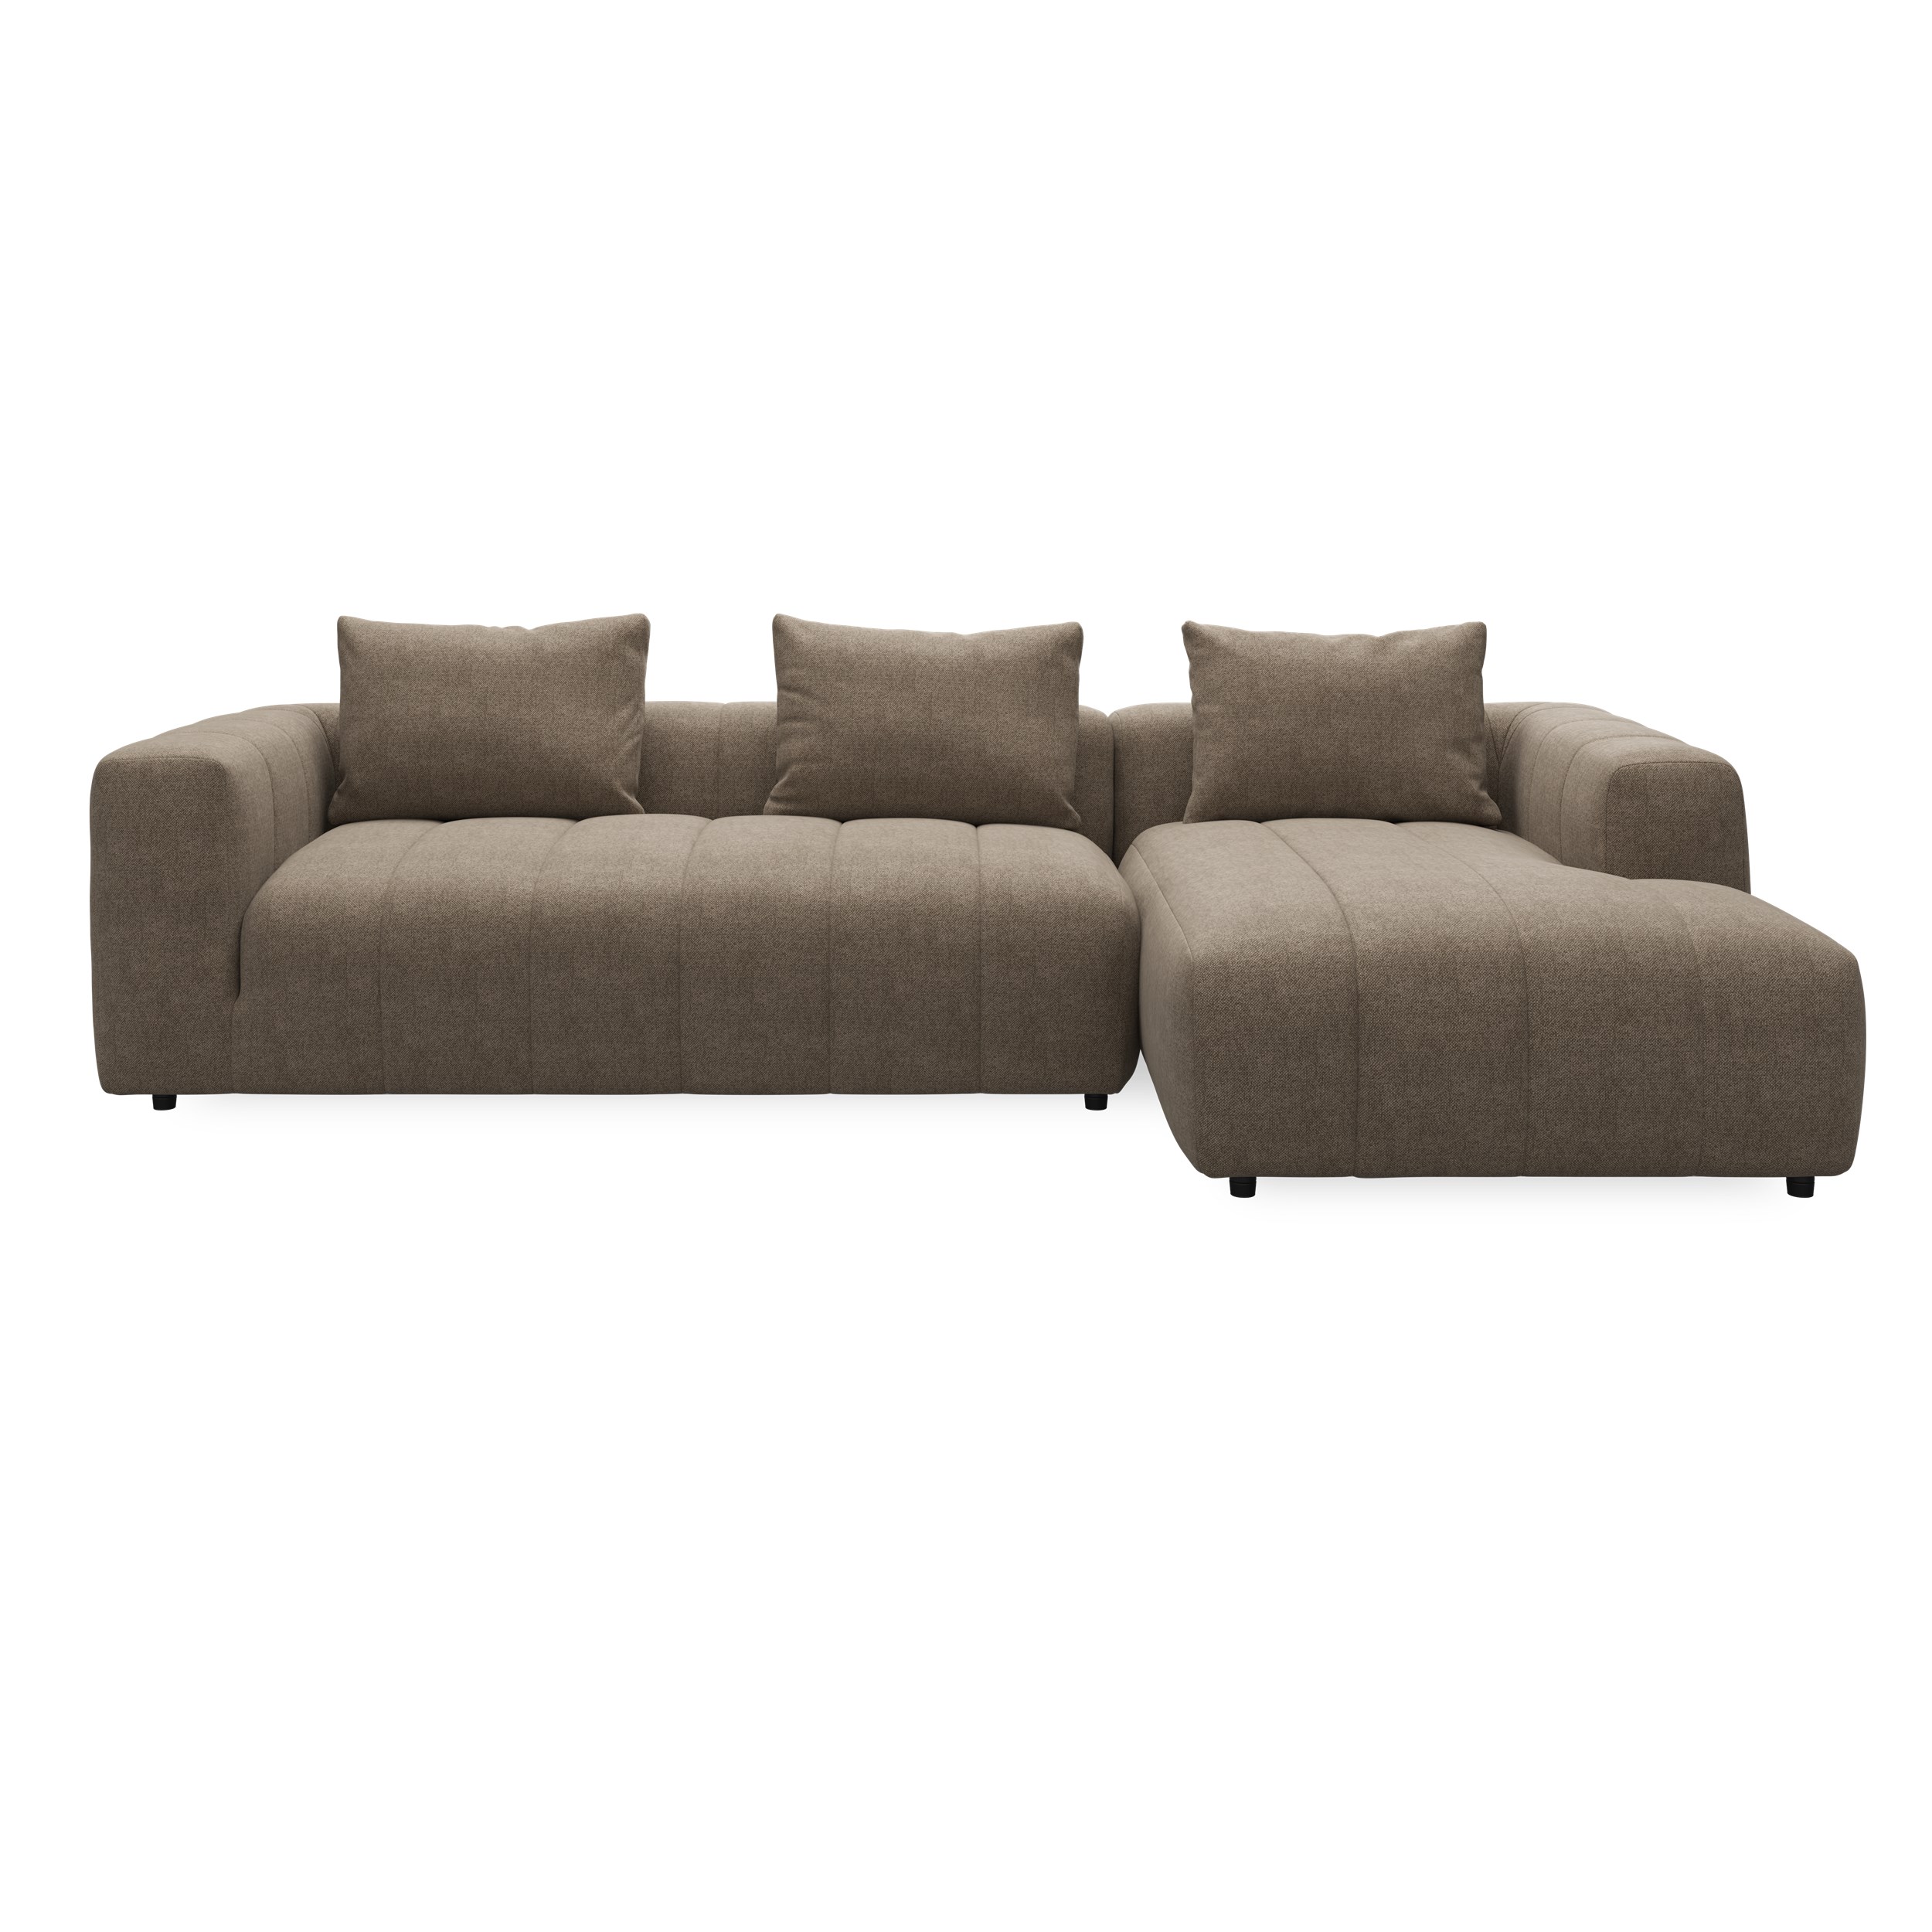 Ingvar højrevendt sofa med chaiselong 